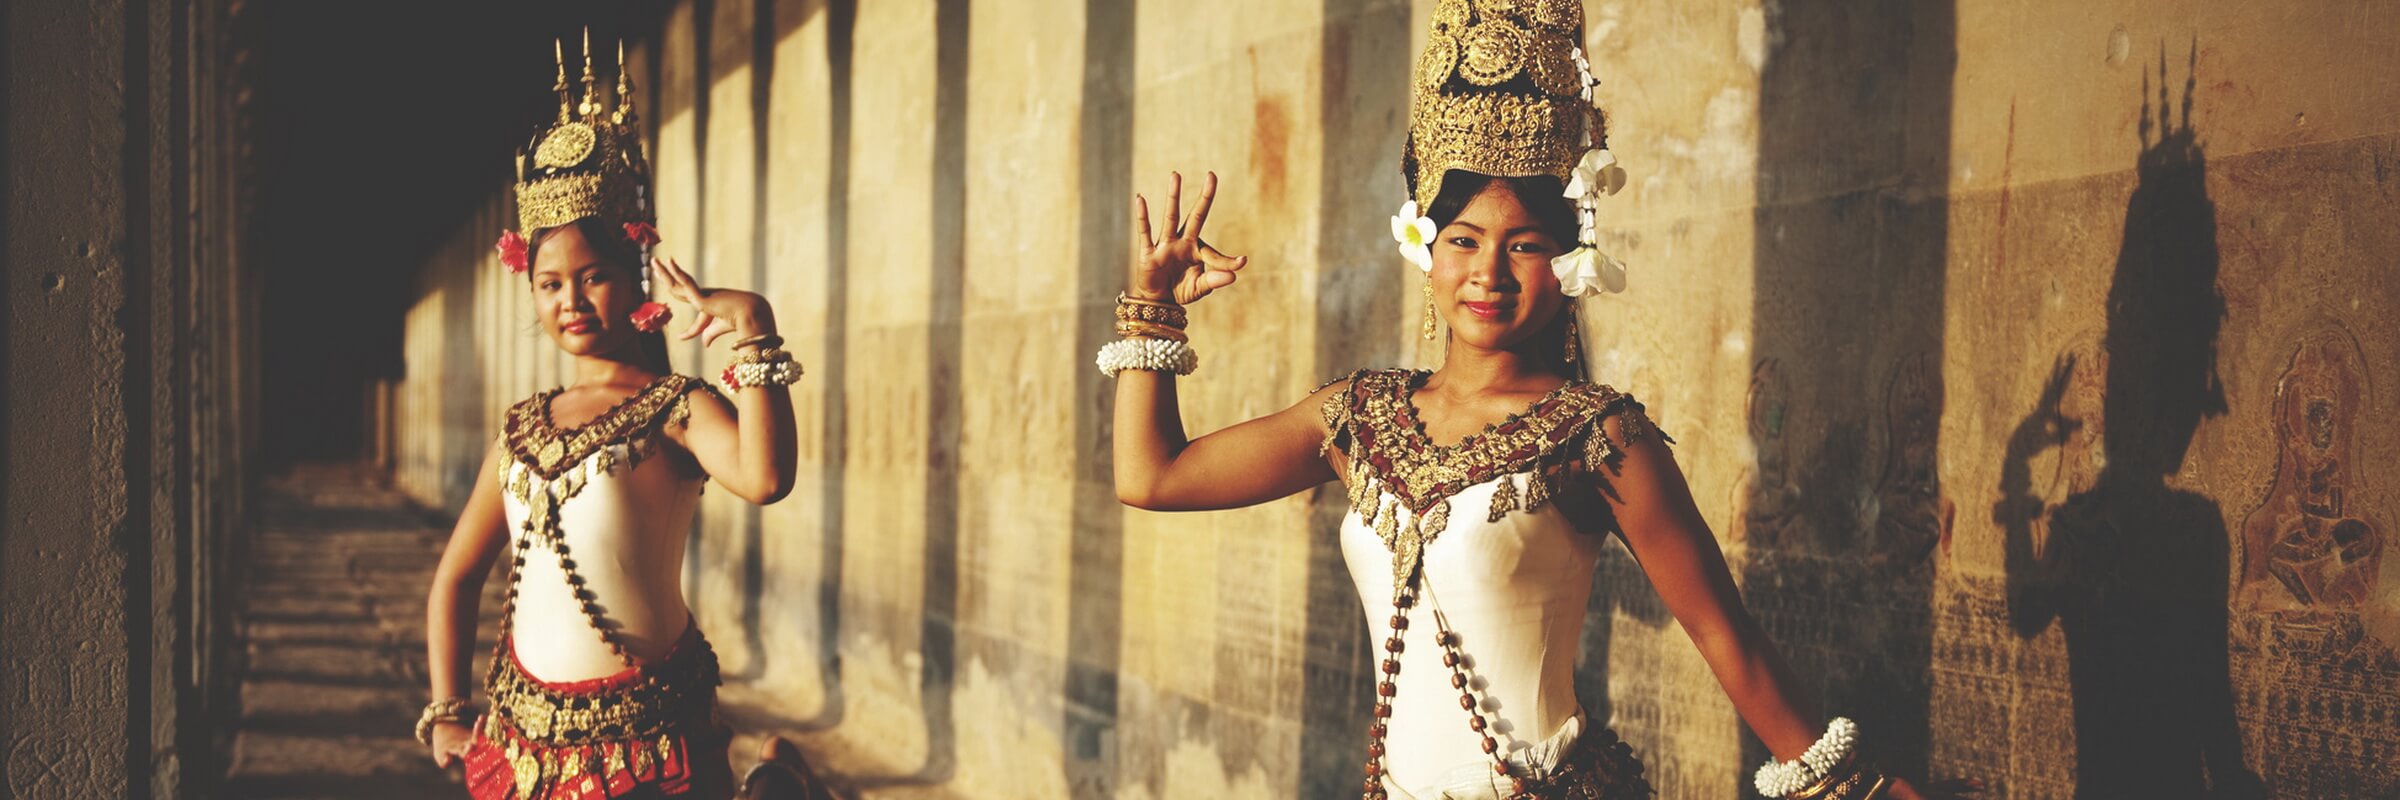 Die Tradition des höfischen Tanzes in Kambodscha wird oft auch Apsara-Tanz genannt und geht auf den Königshof in Angkor zurück.